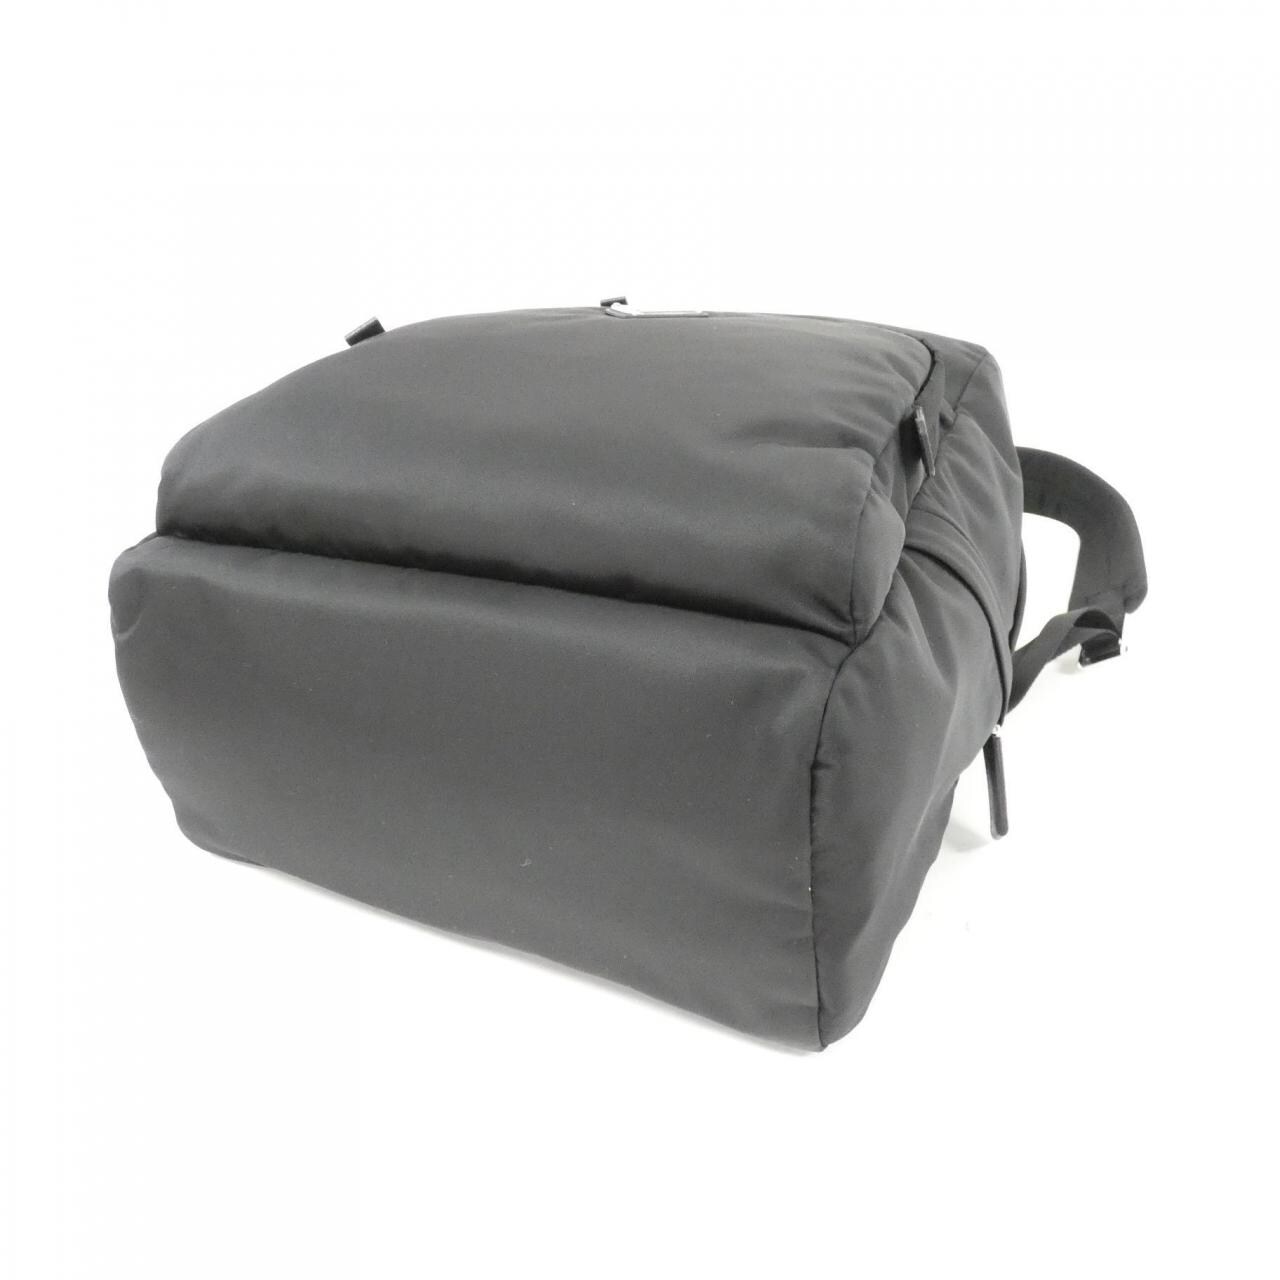 [BRAND NEW] Prada 2VZ104 Backpack